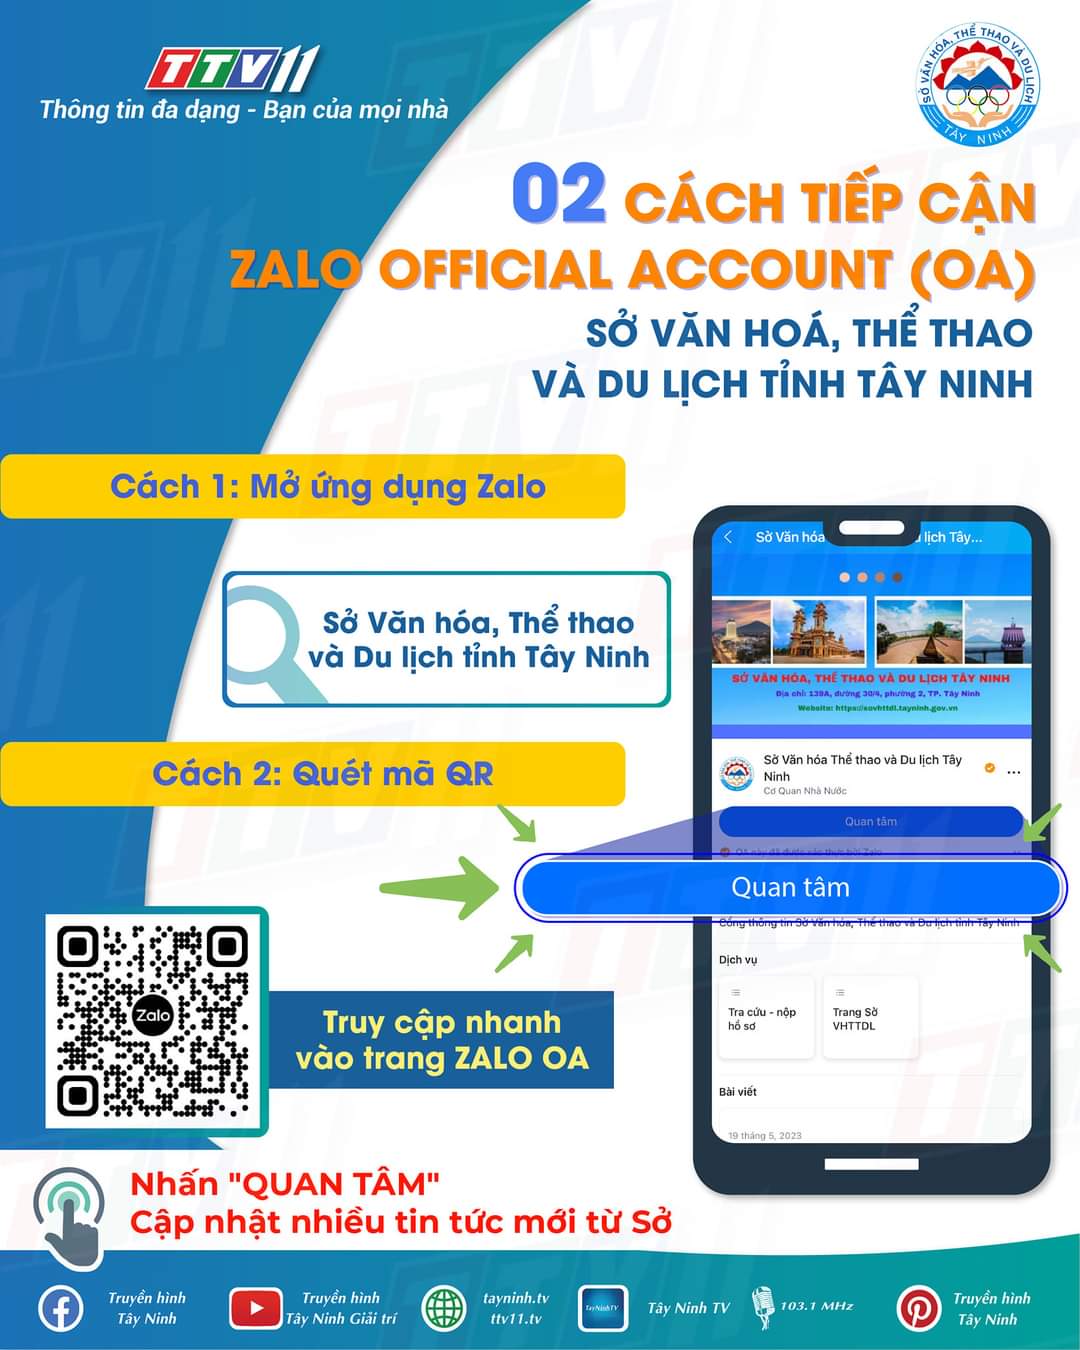 📢 📢 02 cách tiếp cân Zalo OA của Sở Văn hoá, Thể thao và Du lịch Tây Ninh.